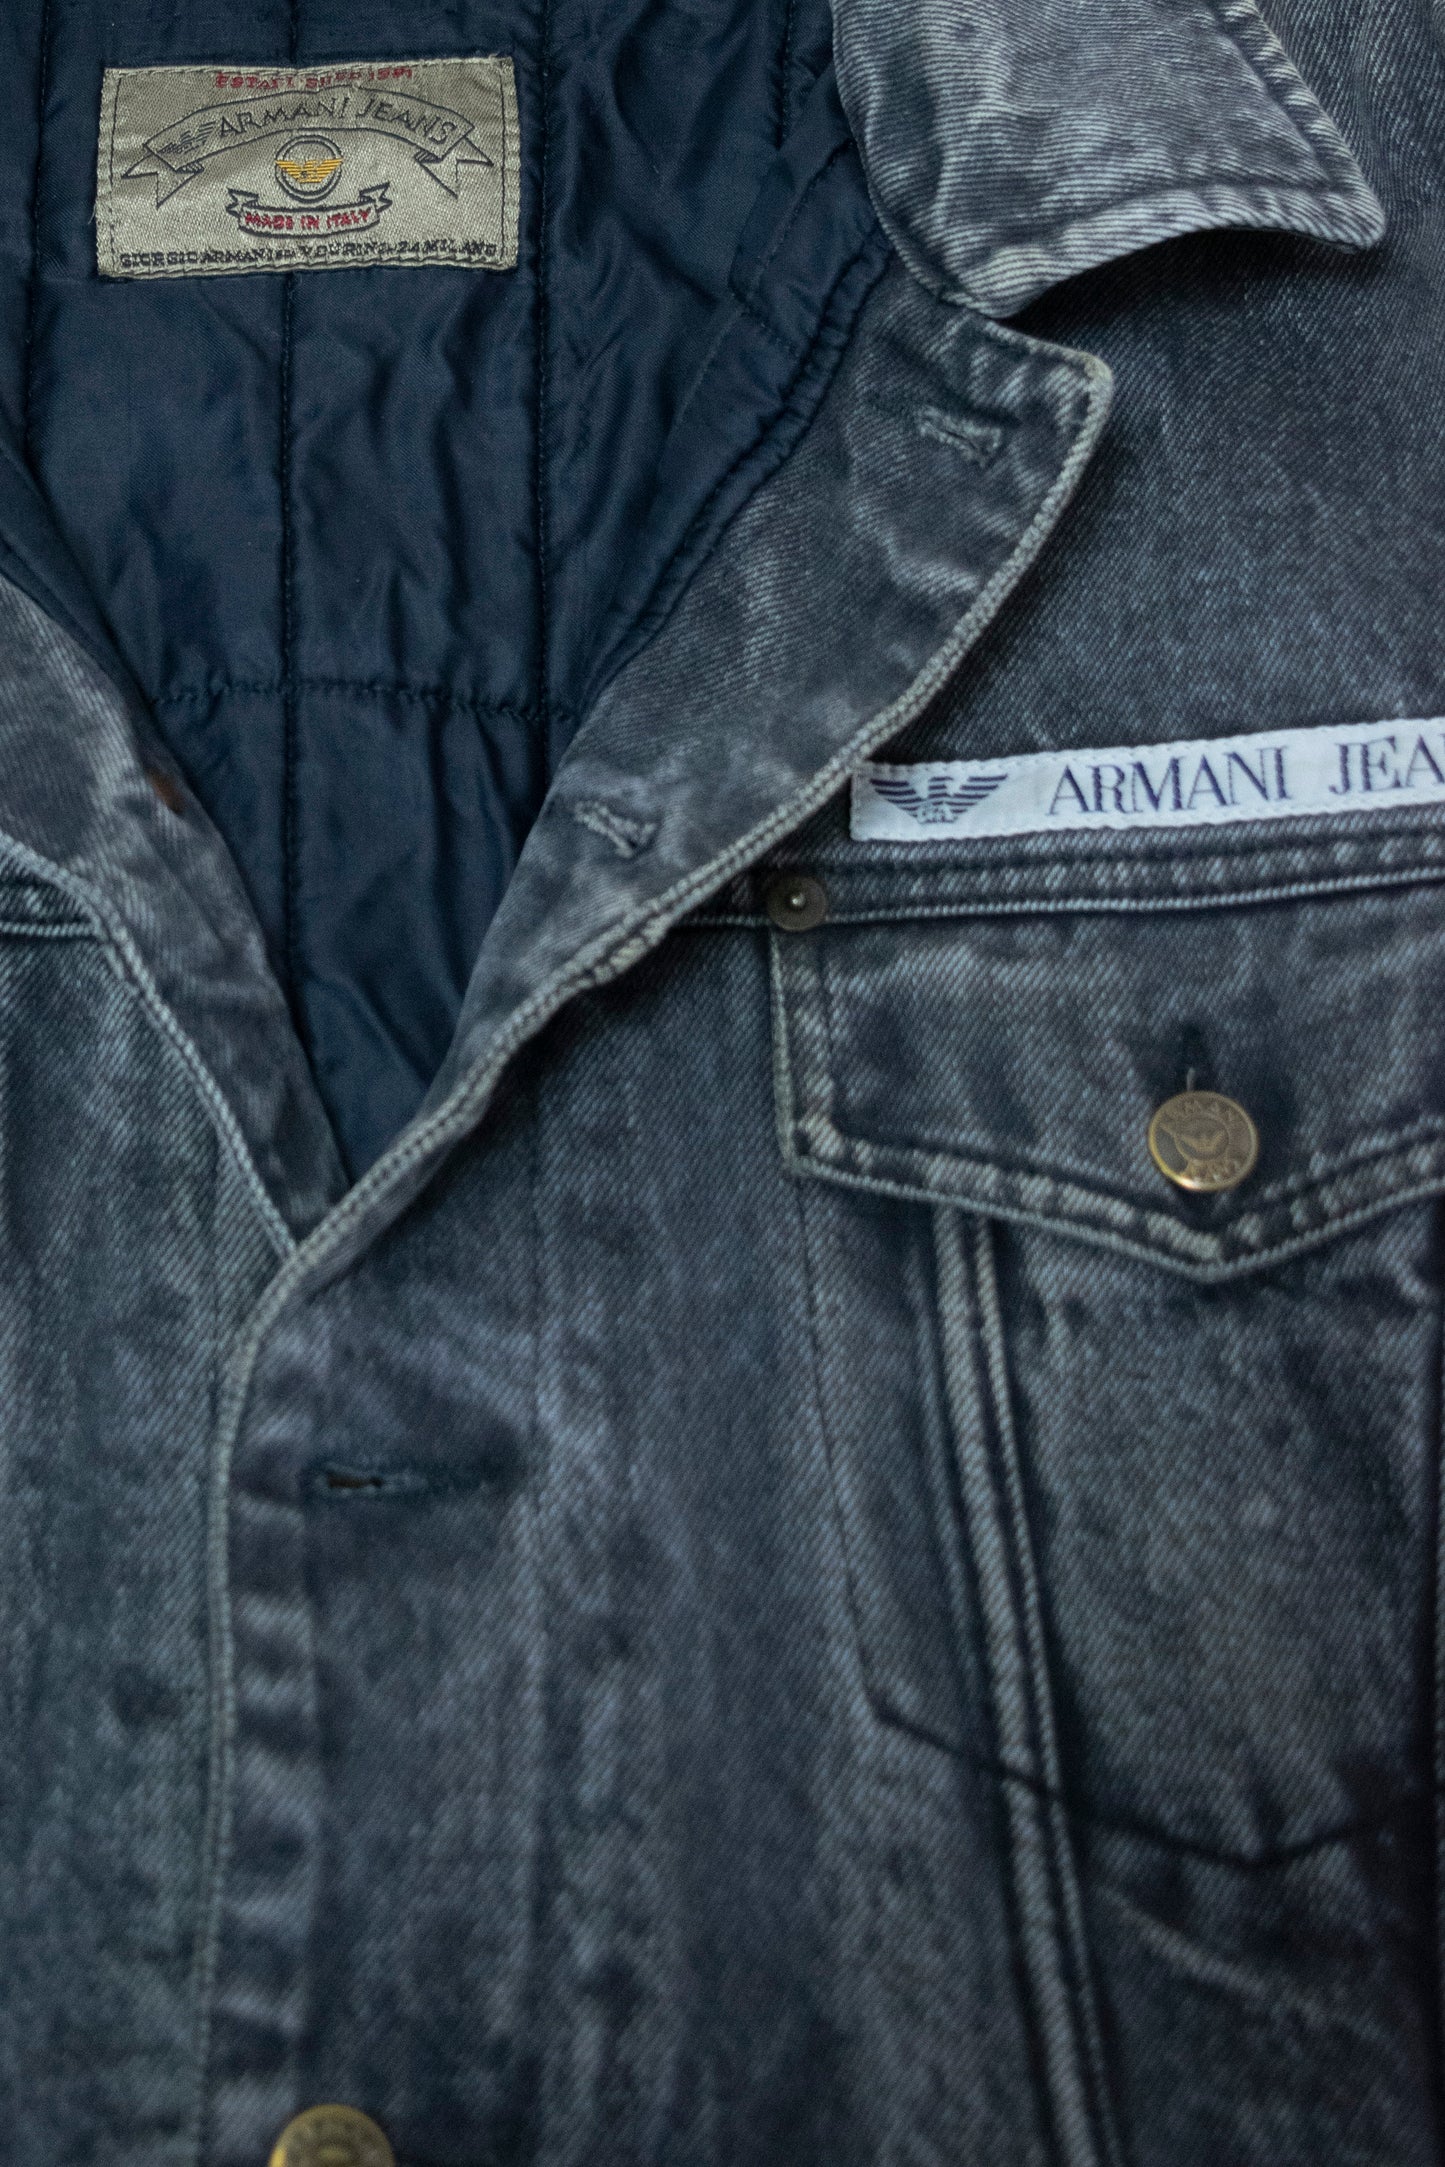 Vintage Armani Type-3 Distressed Denim Jacket - M